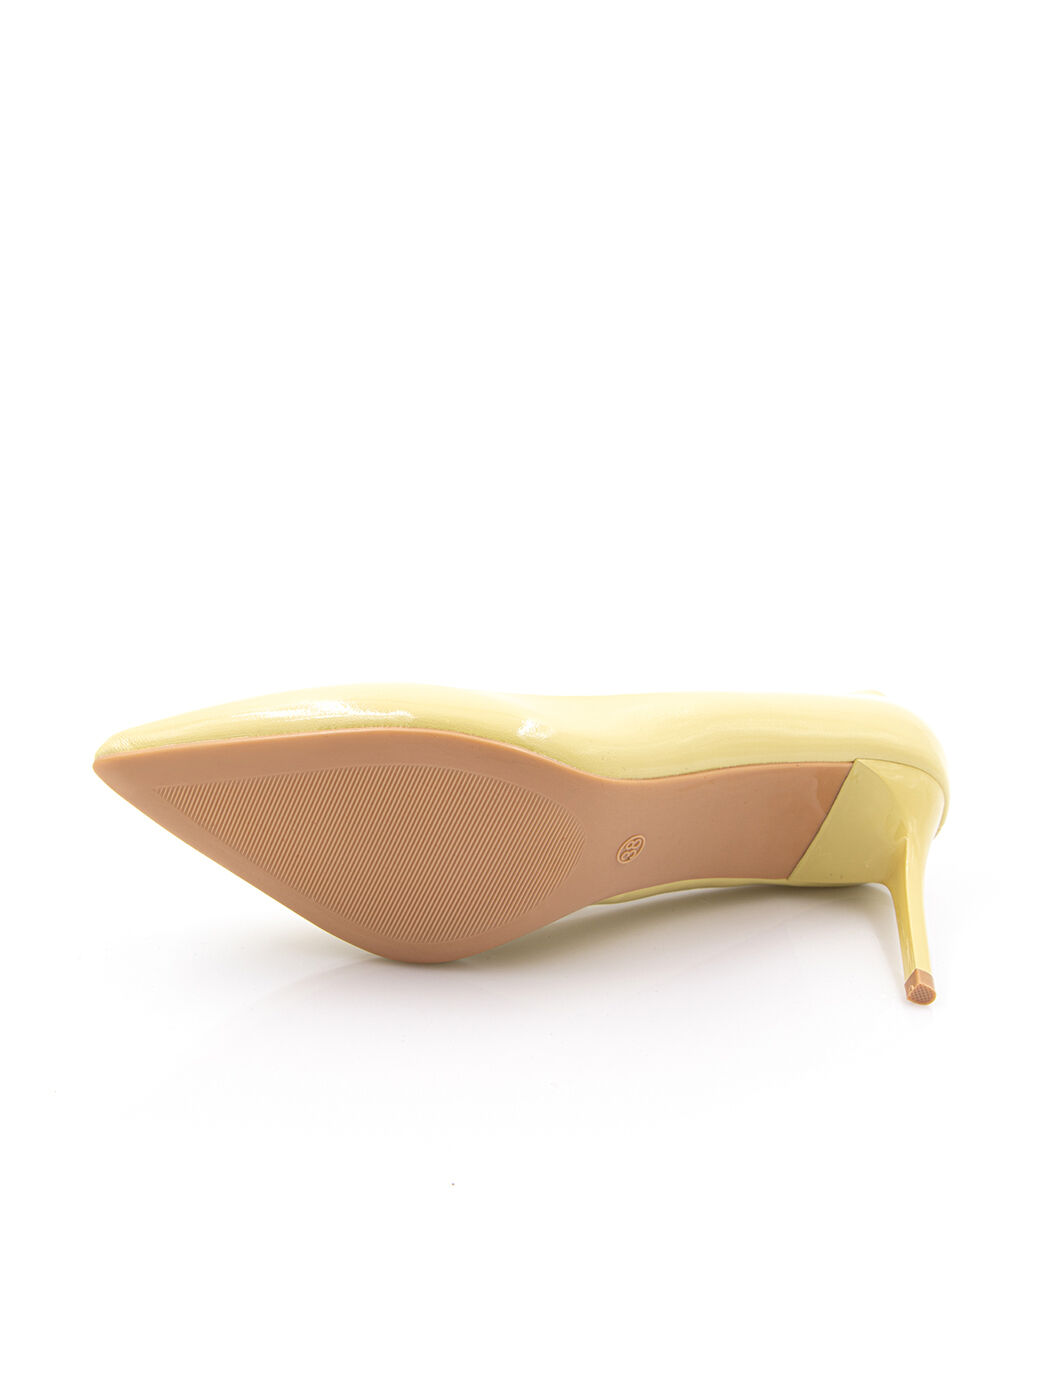 Туфлі жіночі жовті штучний лак каблук шпилька демісезон від виробника HM вид 2